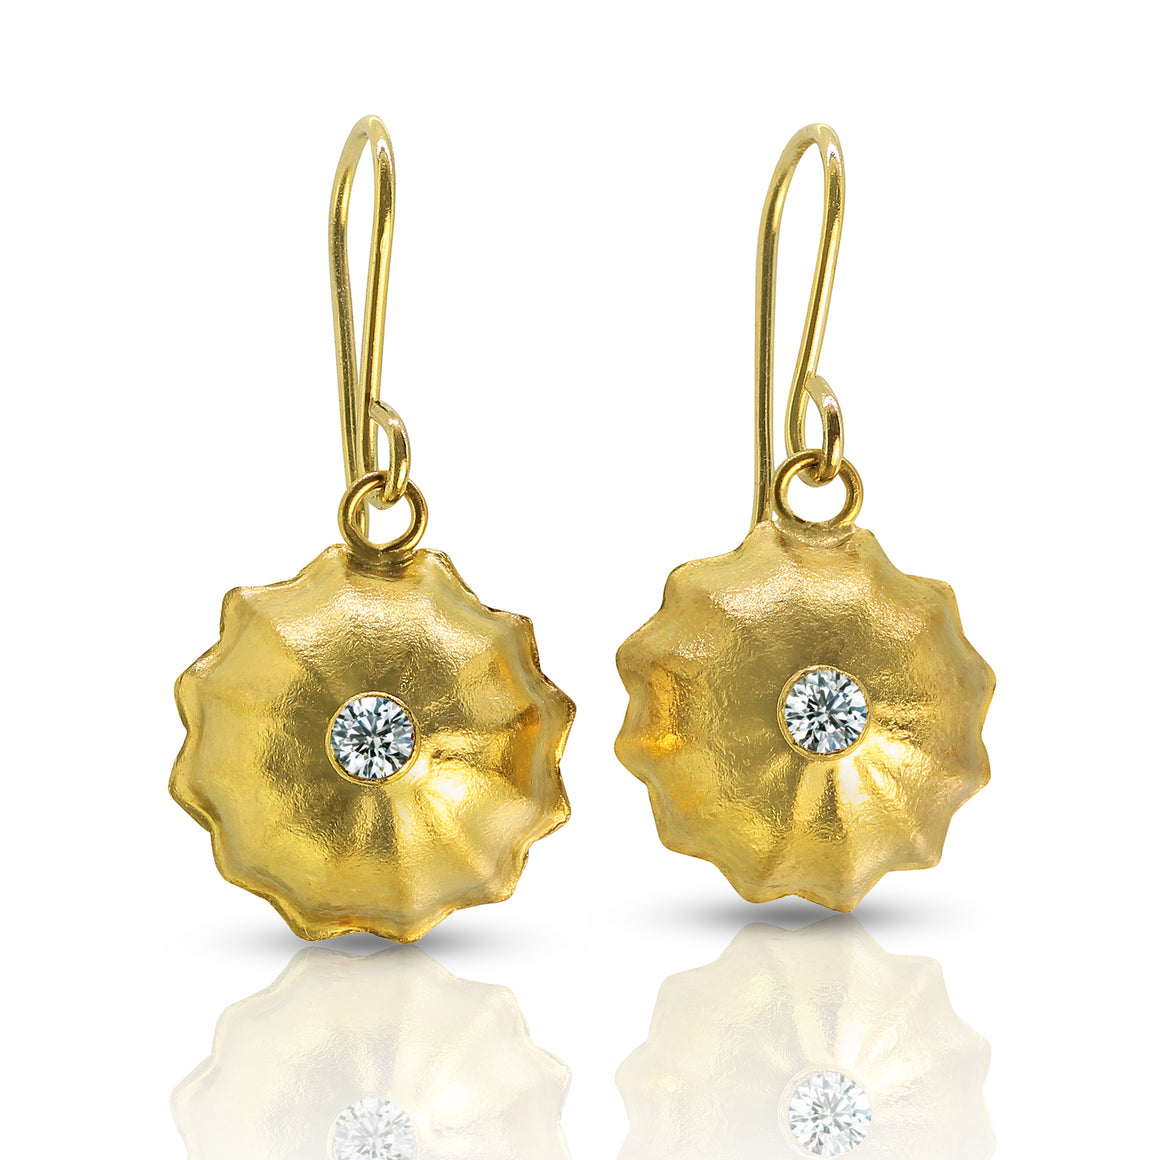 Melon Ball Earrings - 22K and Diamond - Nancy Troske Jewelry